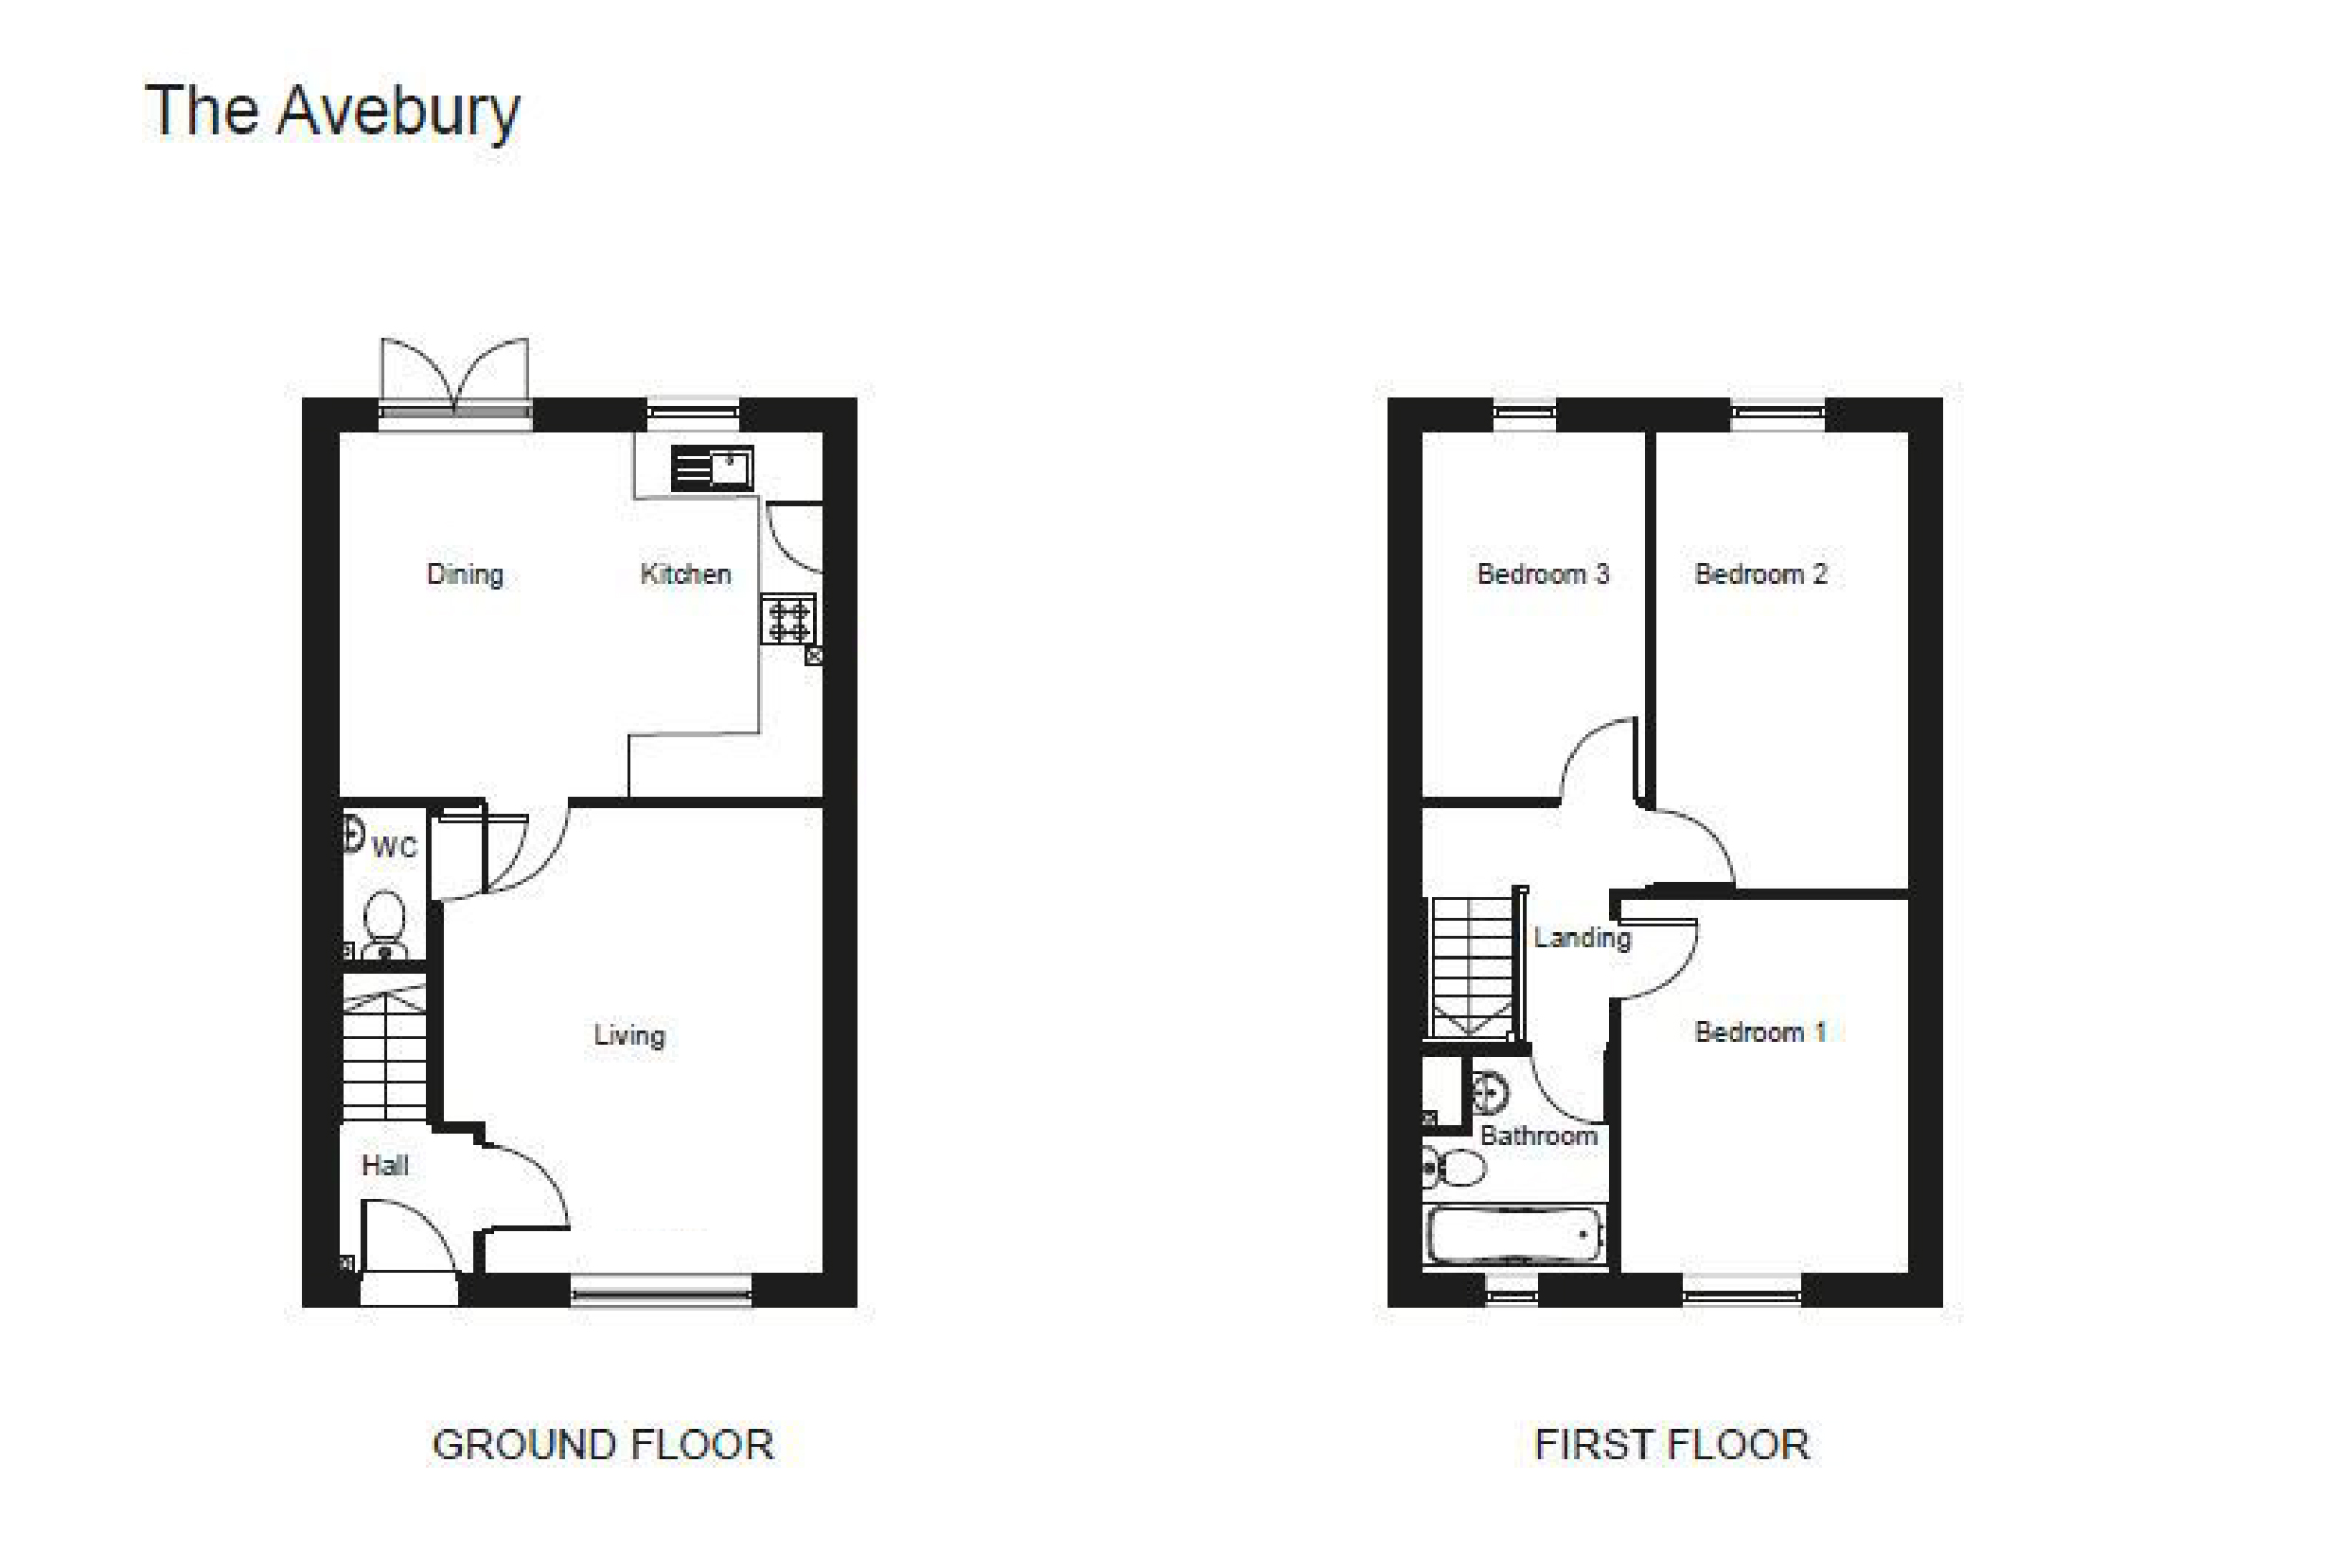 The Avebury floor plans